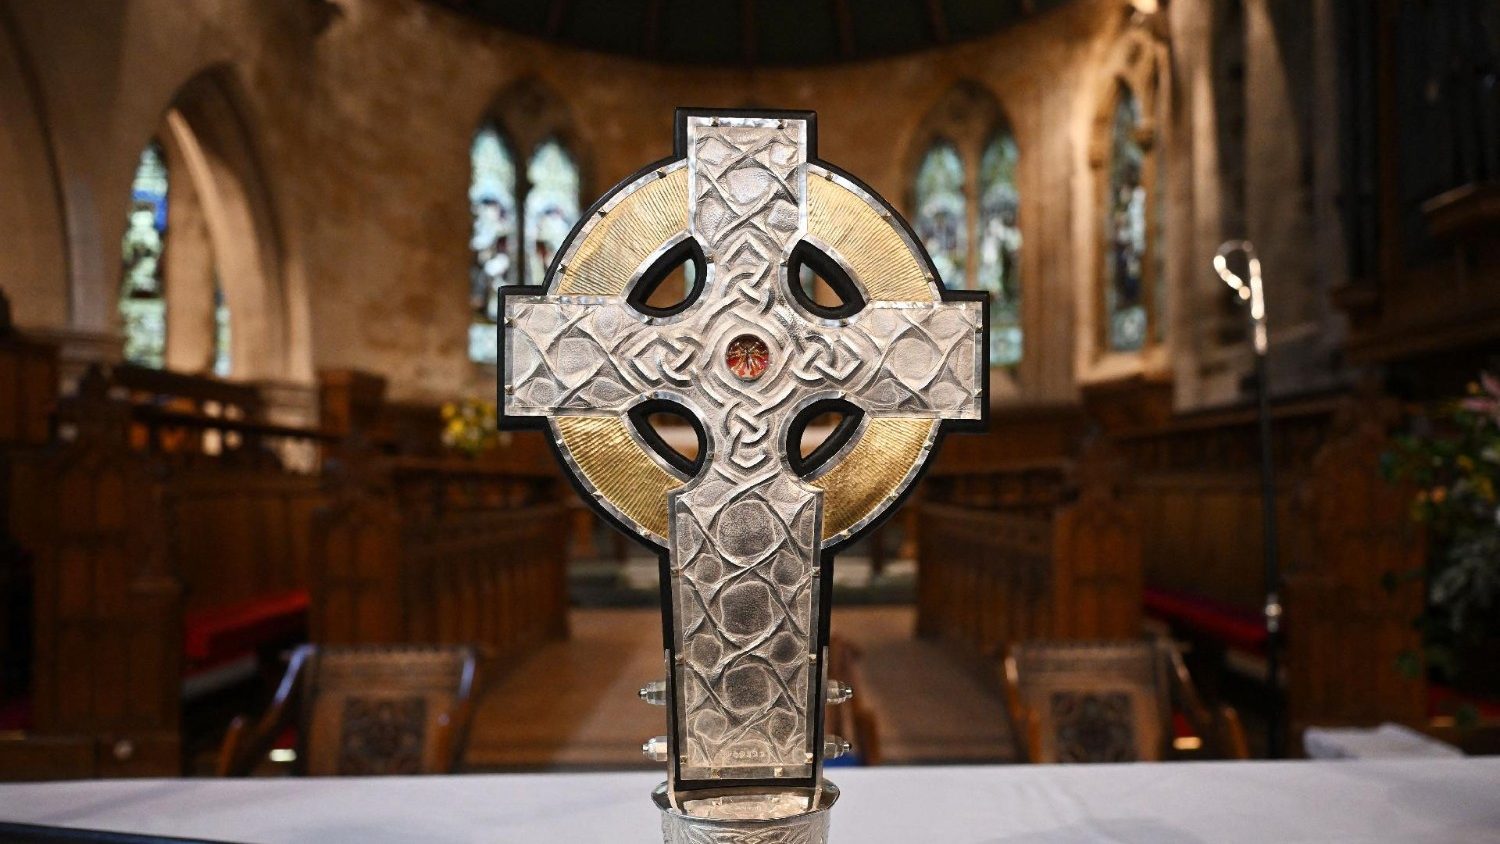 "Thánh Giá xứ Wales", có chạm hai mảnh Thánh Giá Chúa Giêsu, sẽ đi đầu đoàn rước đăng quang của Vua Charles III của Anh quốc  (AFP or licensors)